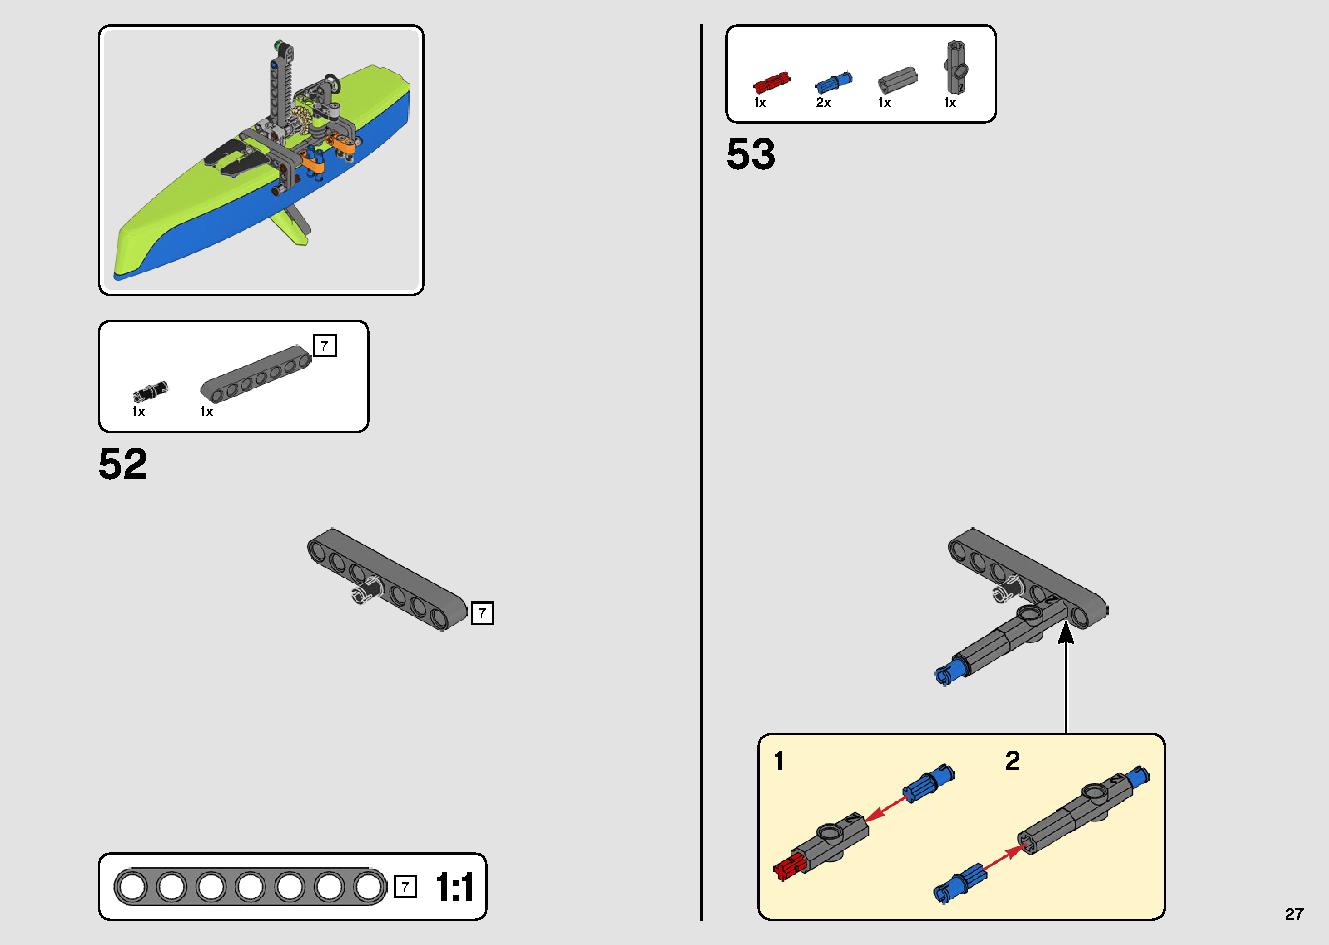 カタマランヨット 42105 レゴの商品情報 レゴの説明書・組立方法 27 page